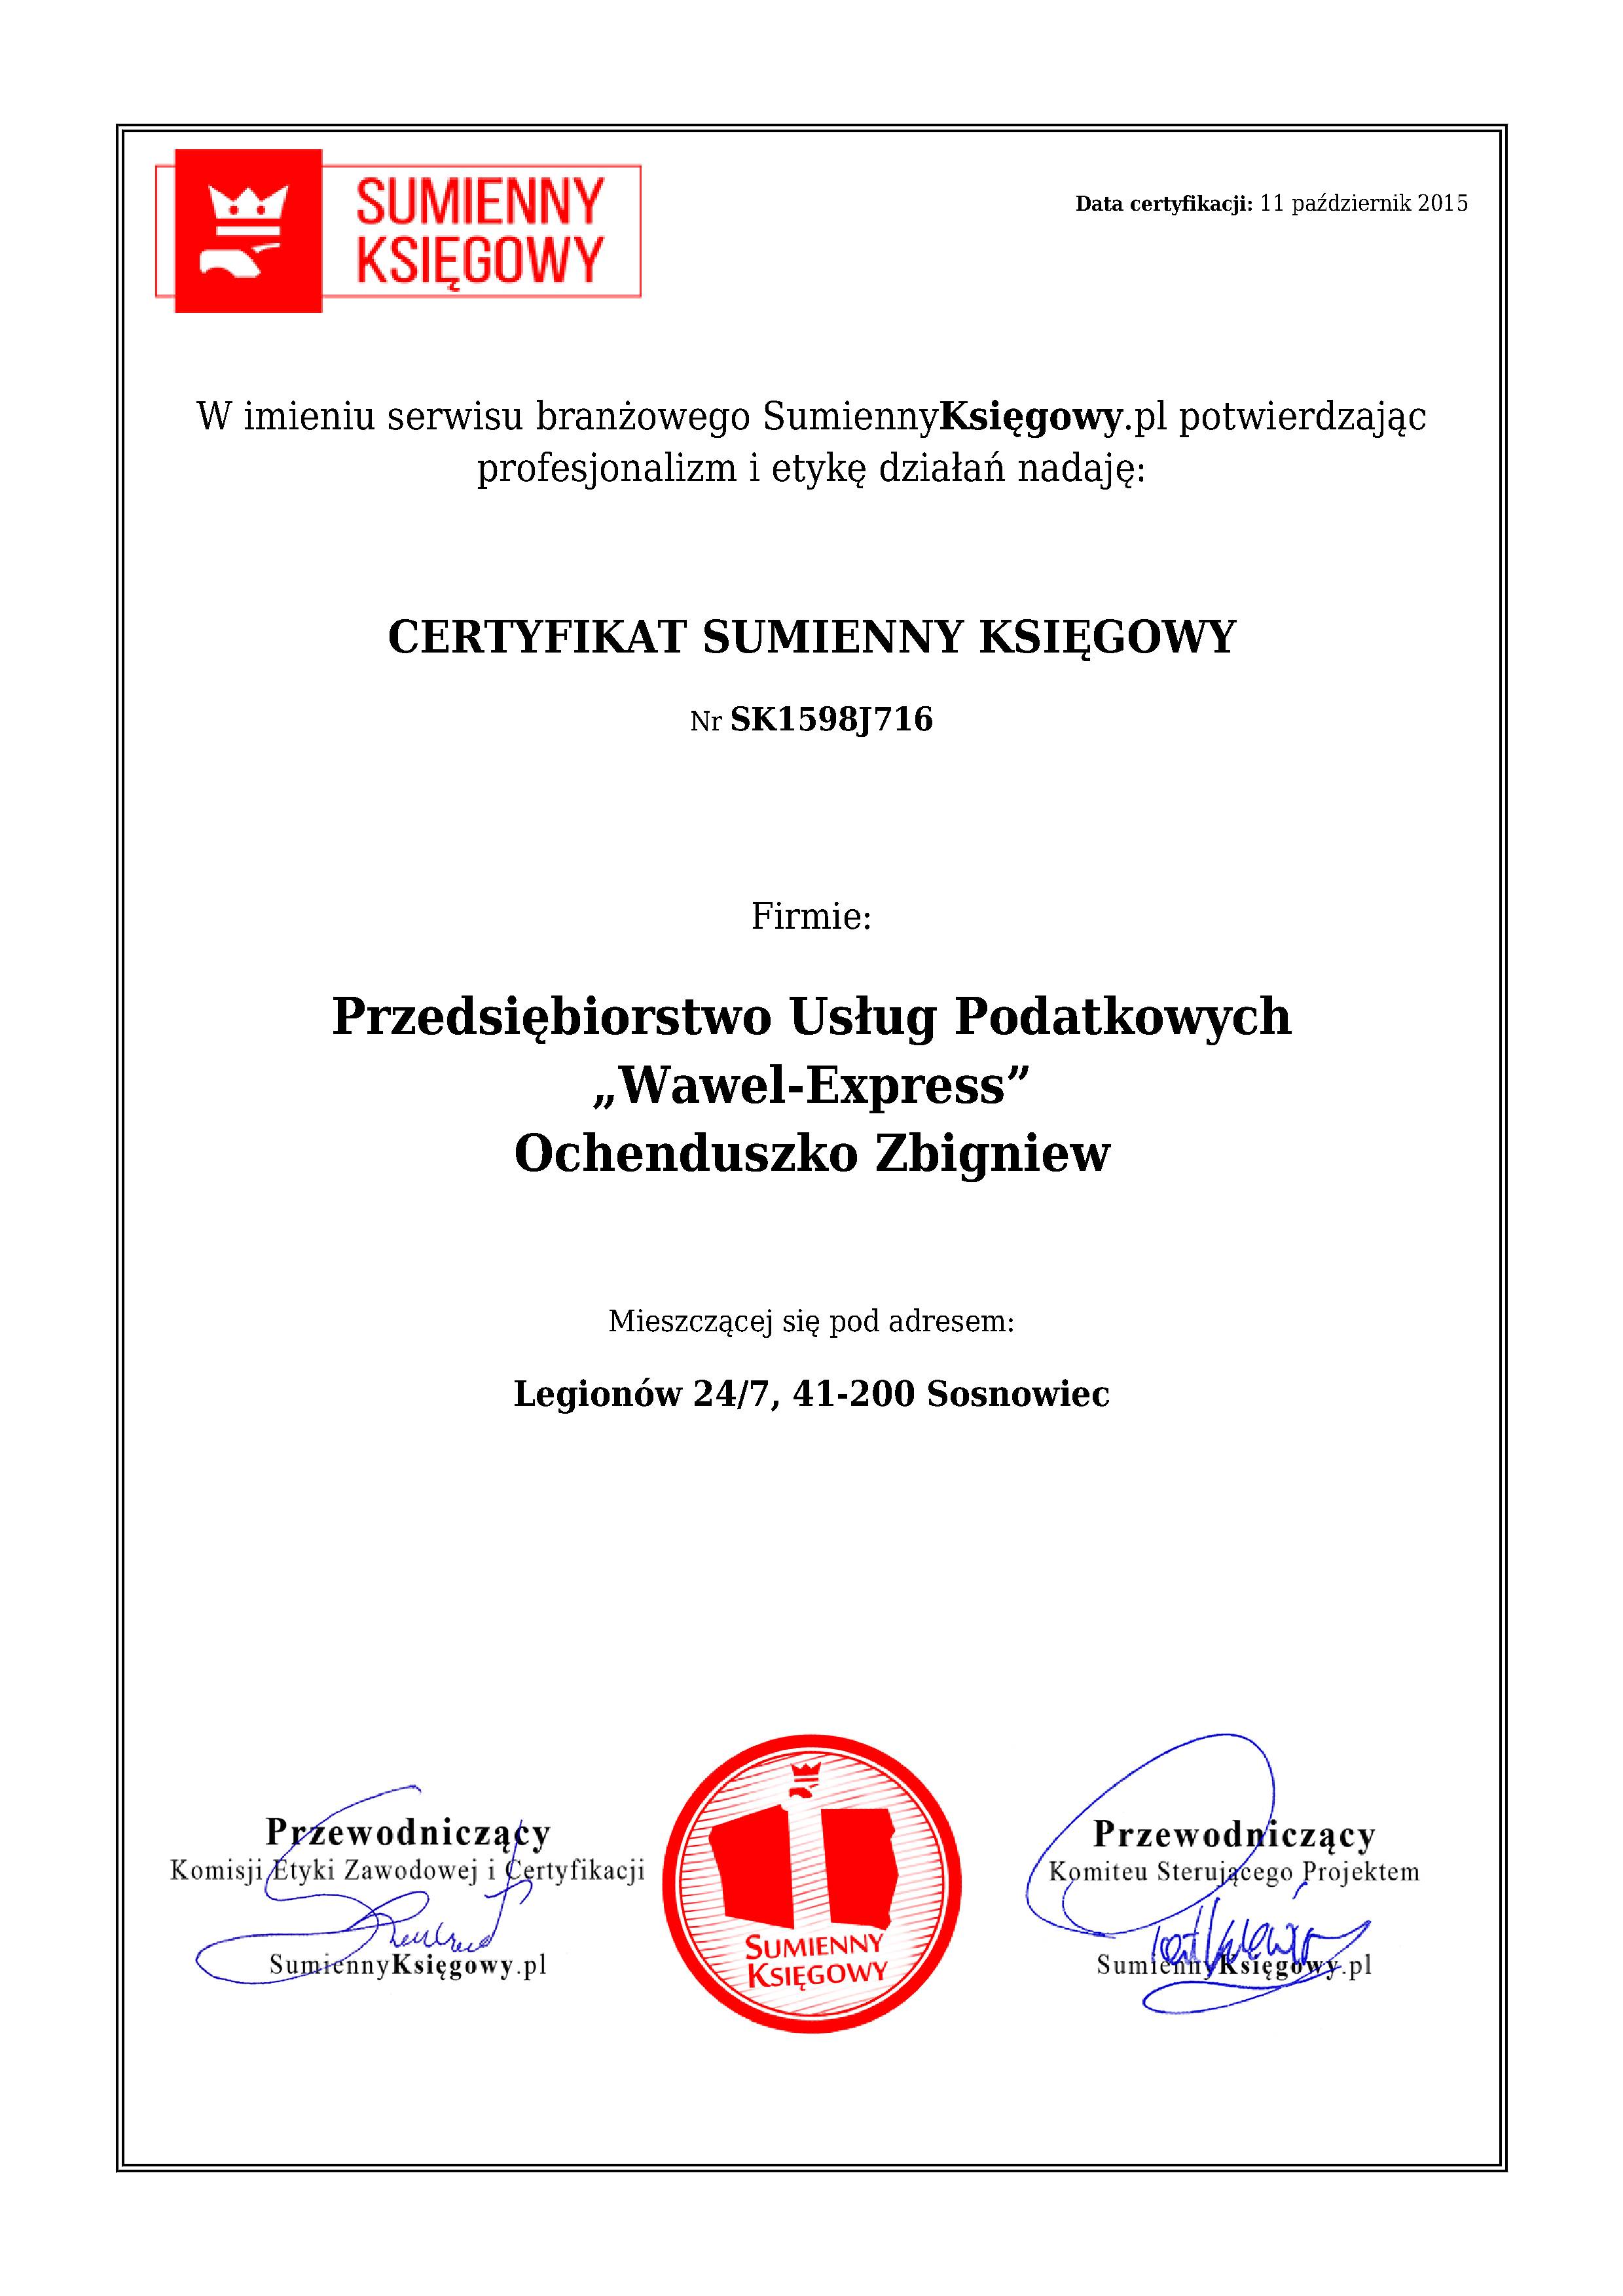 Przedsiębiorstwo Usług Podatkowych „Wawel-Express” Ochenduszko Zbigniew certyfikat 1